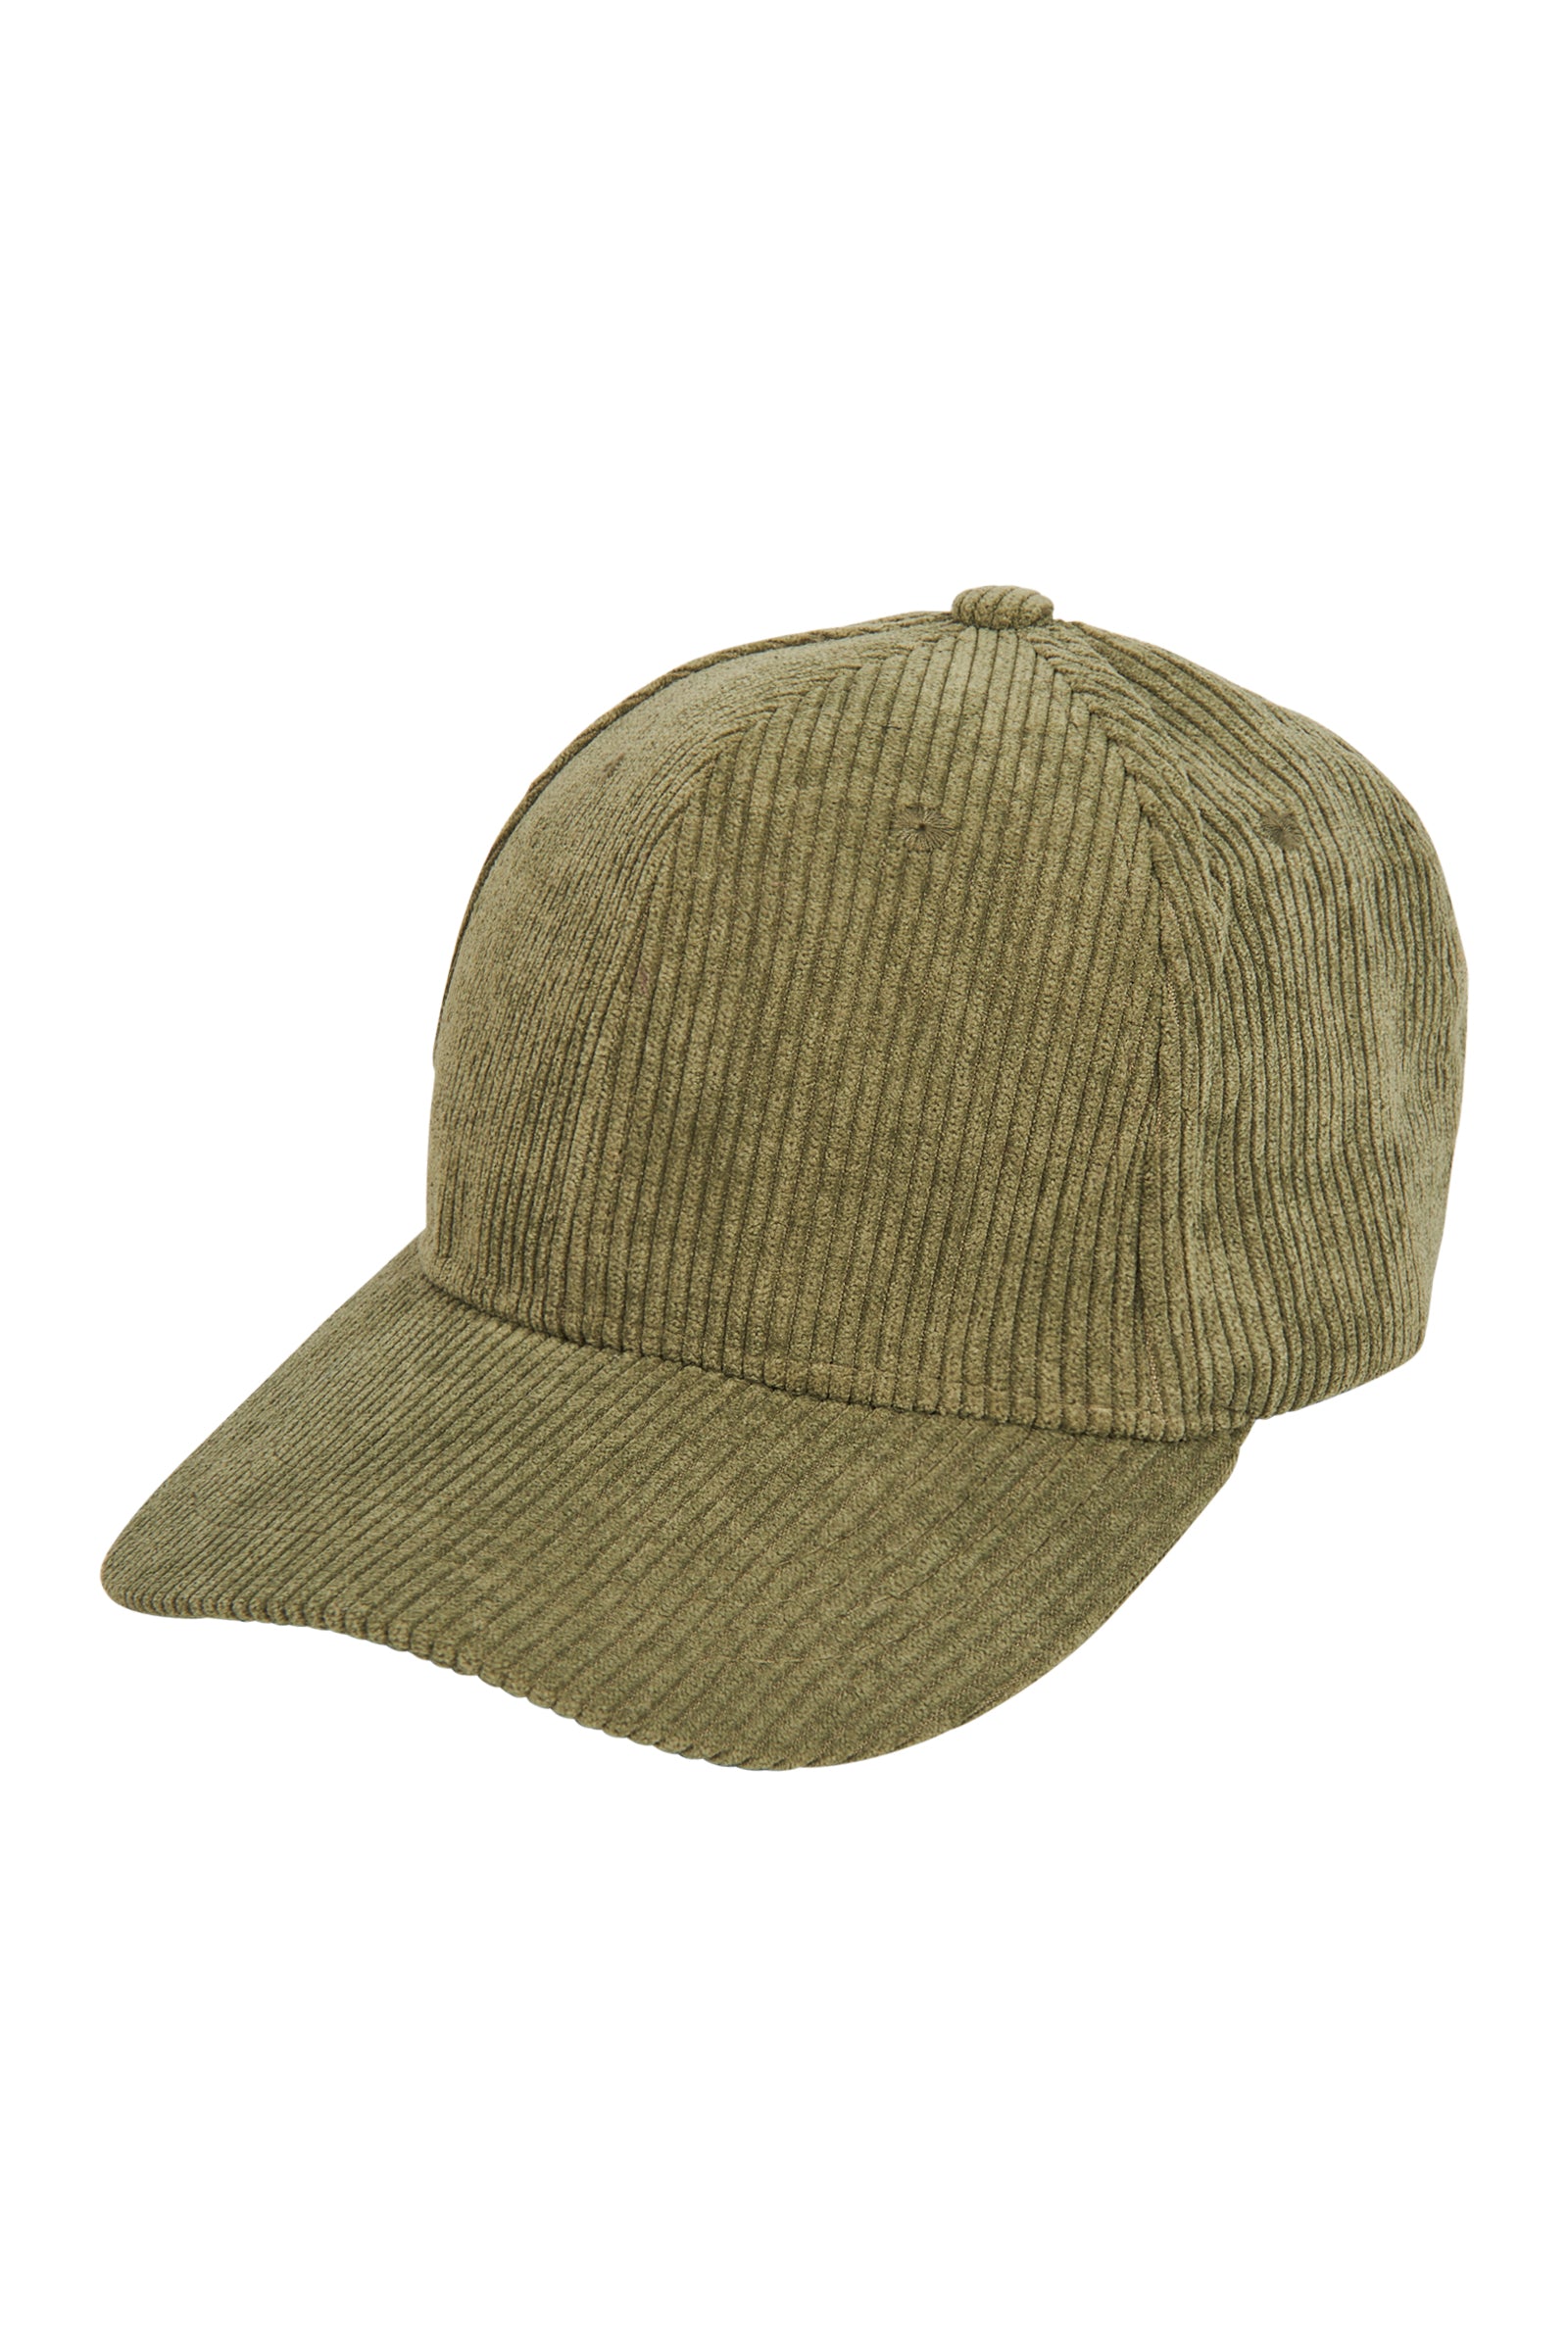 Paarl Cap - Sage - eb&ive Hat